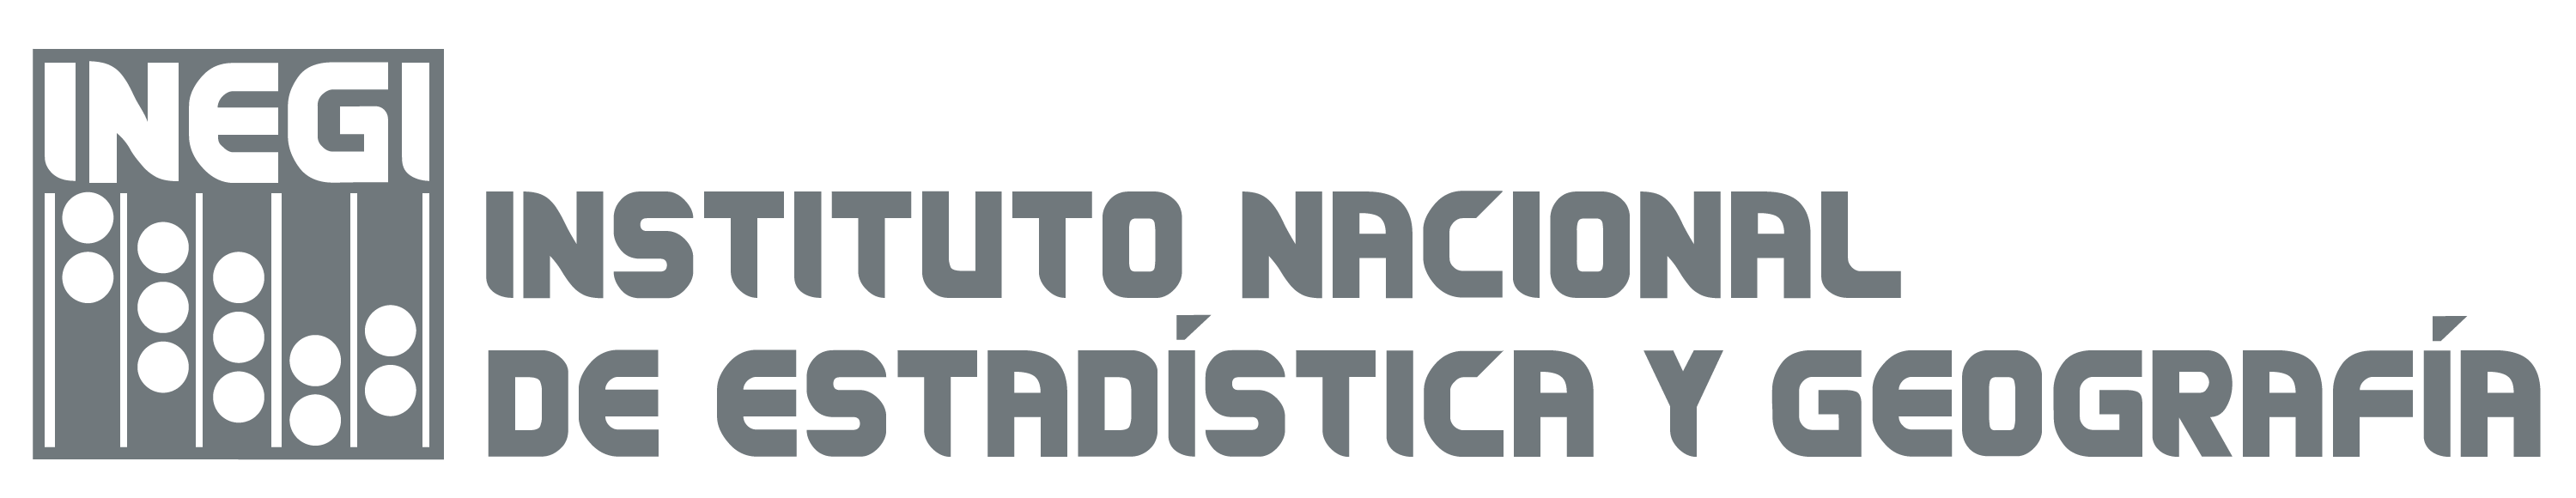 Logotipo institucional